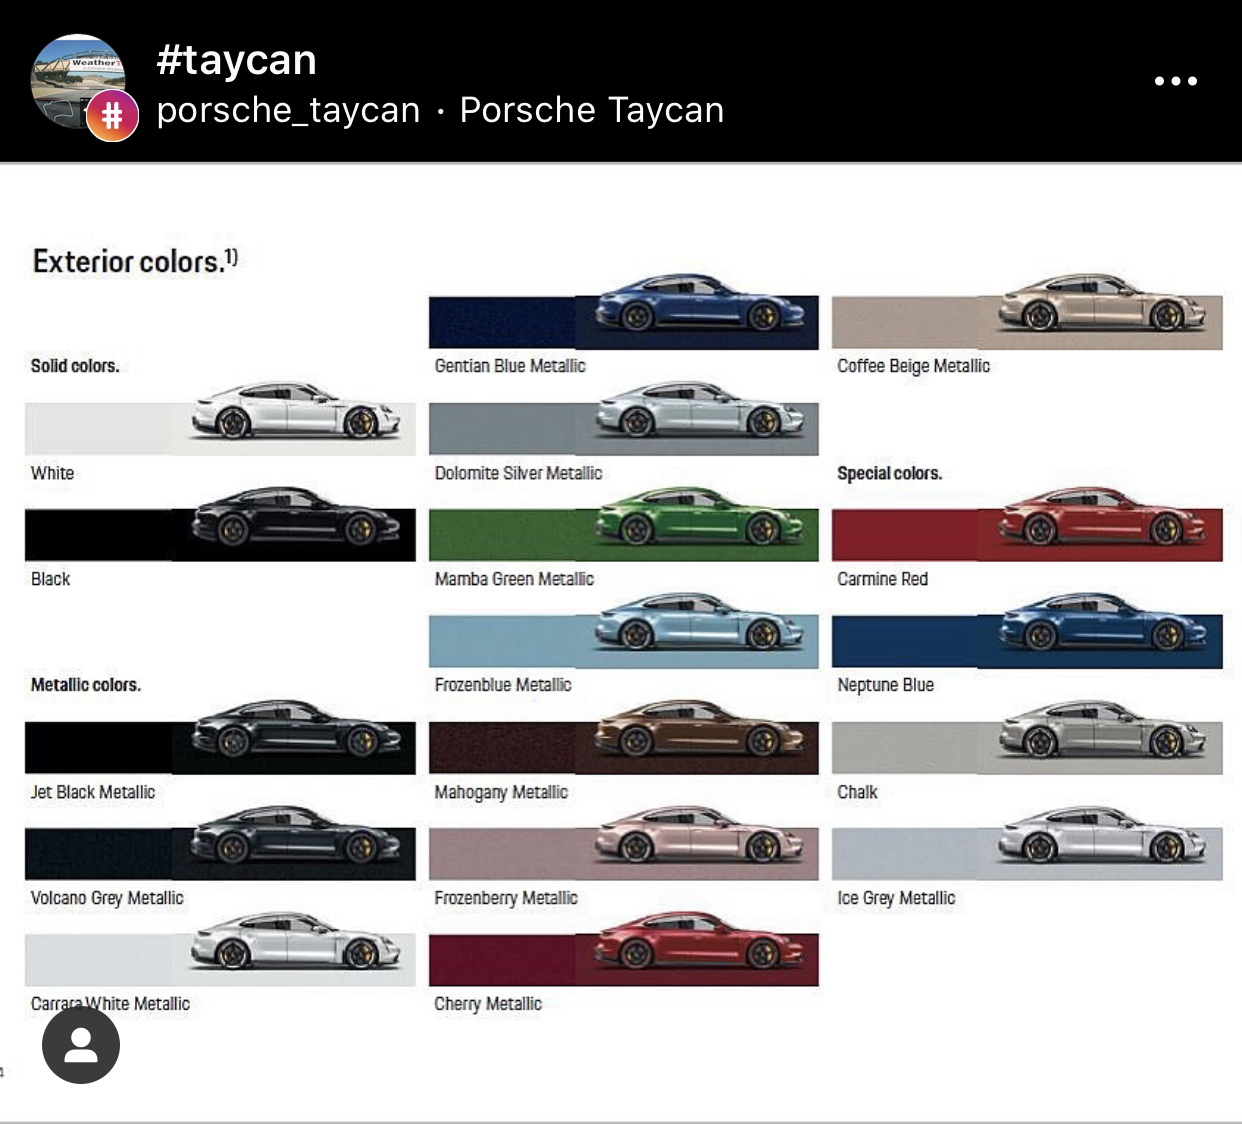 Porsche Taycan Which Colors ? AEA195E5-F26B-4399-B72B-2144D9C6701D